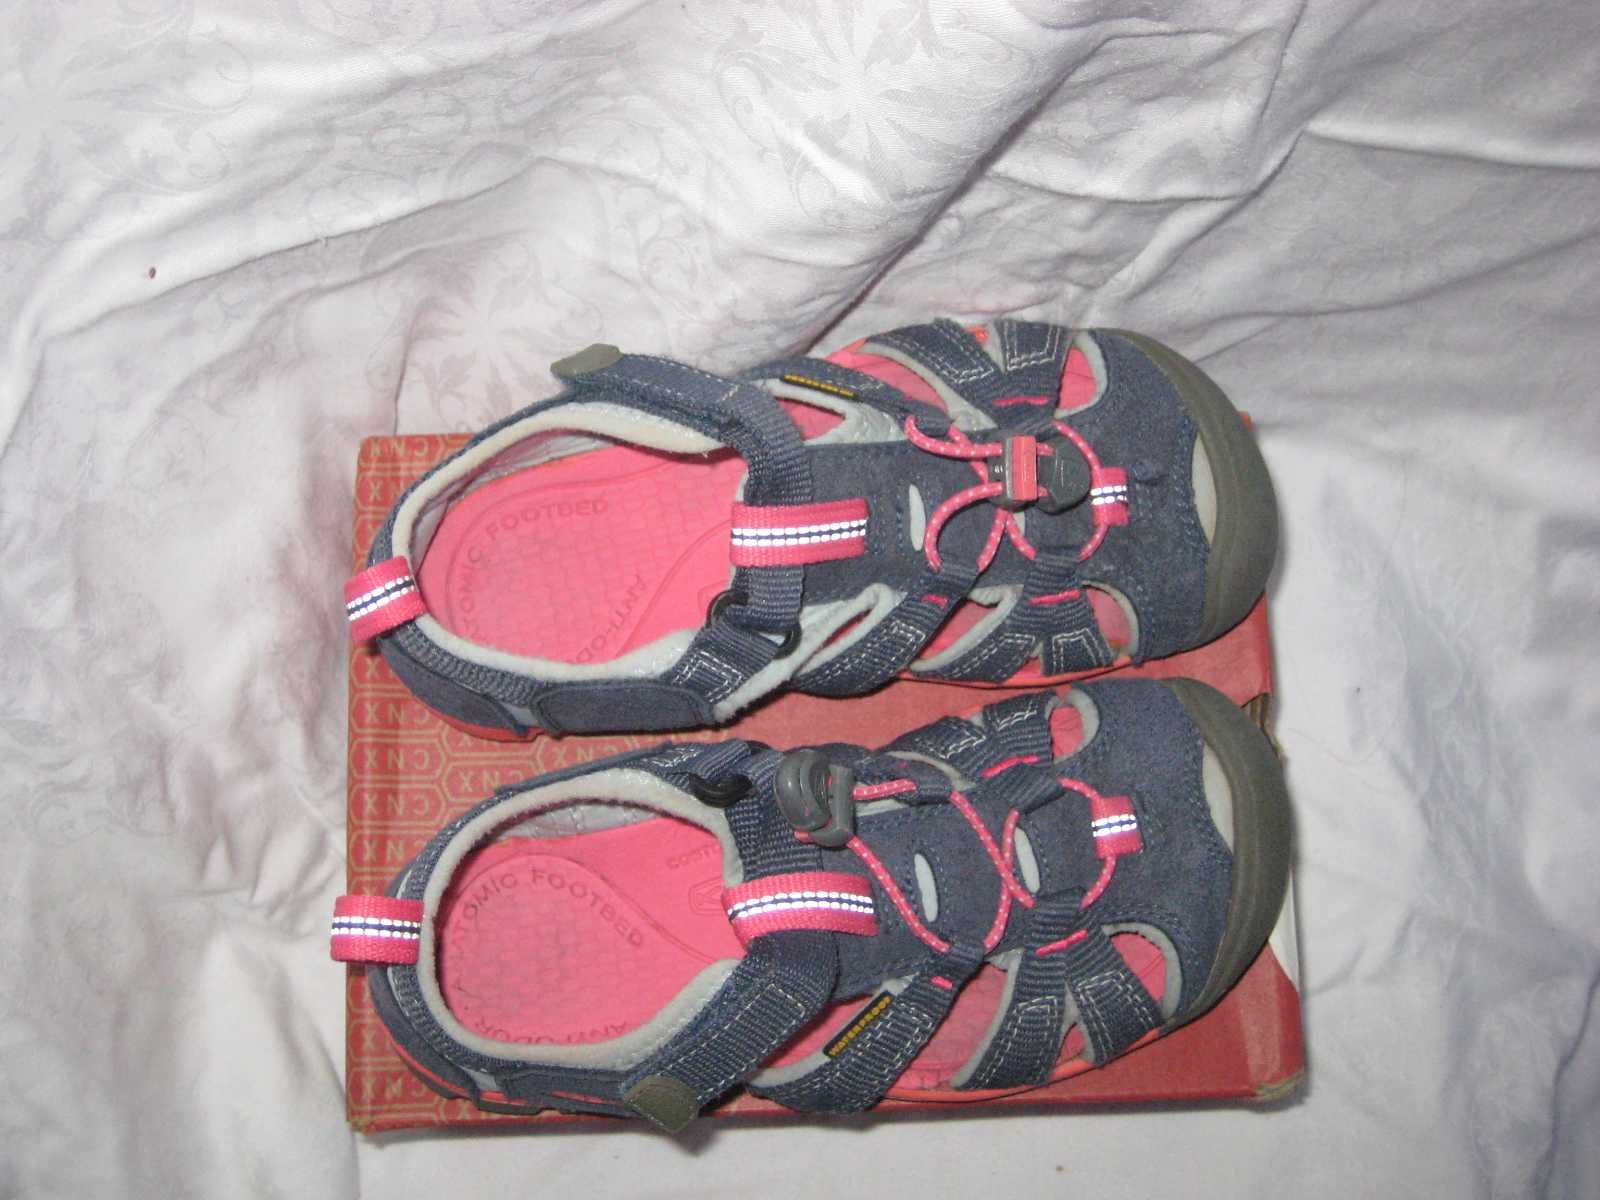 Босоножки сандалии Keen waterproof США 33 размер по стельке 21 см.Кожа